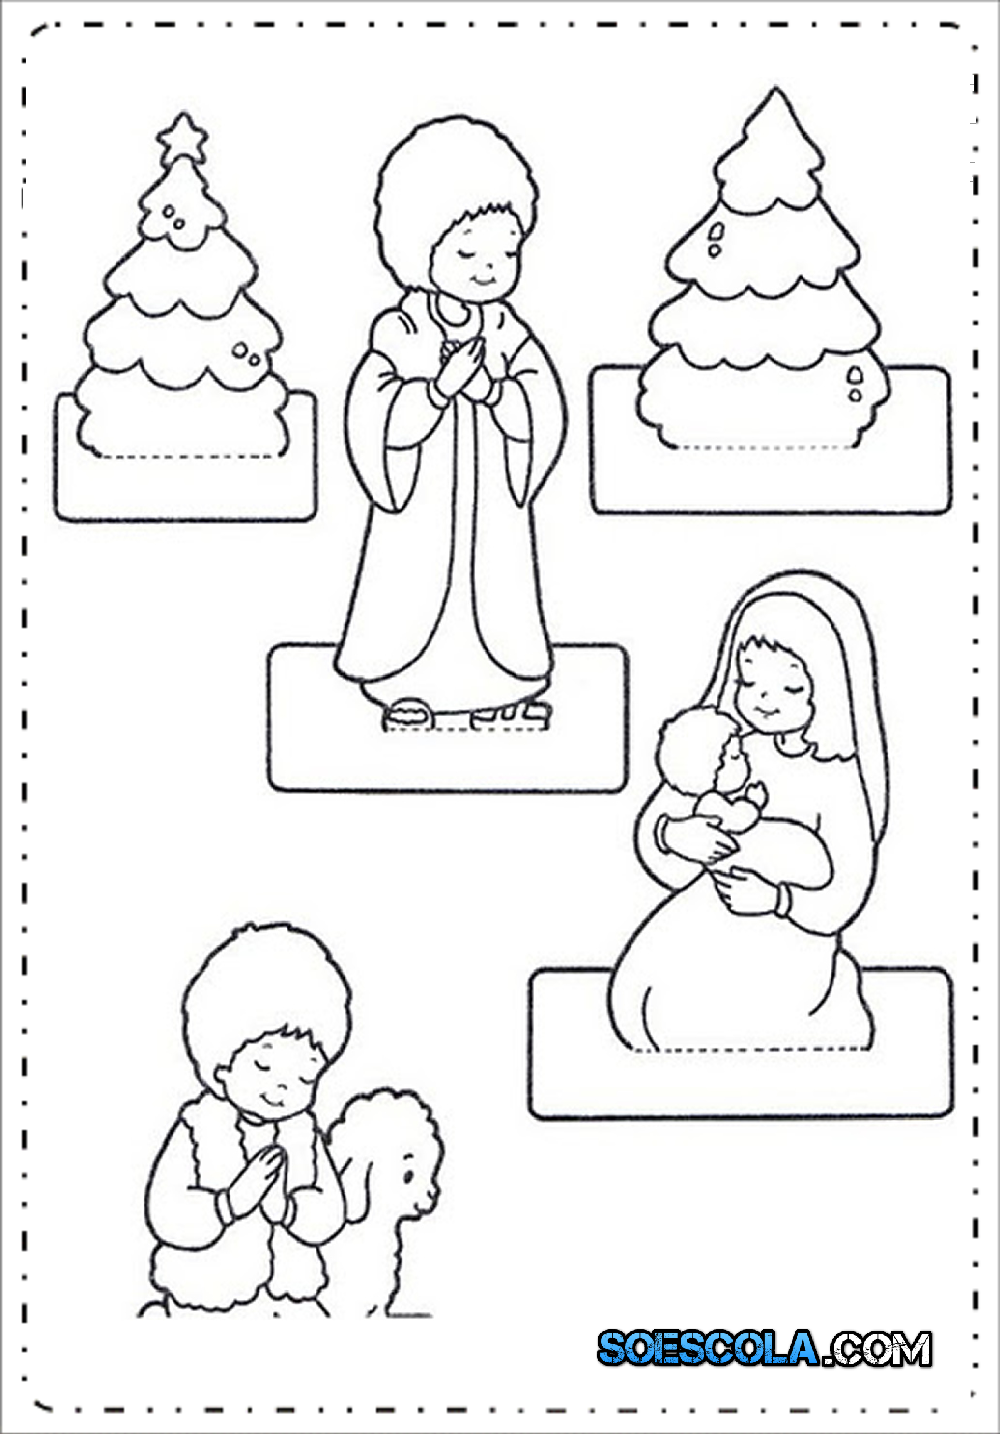 Moldes de Presépio de Natal para Imprimir e Montar - Modelos em PDF.